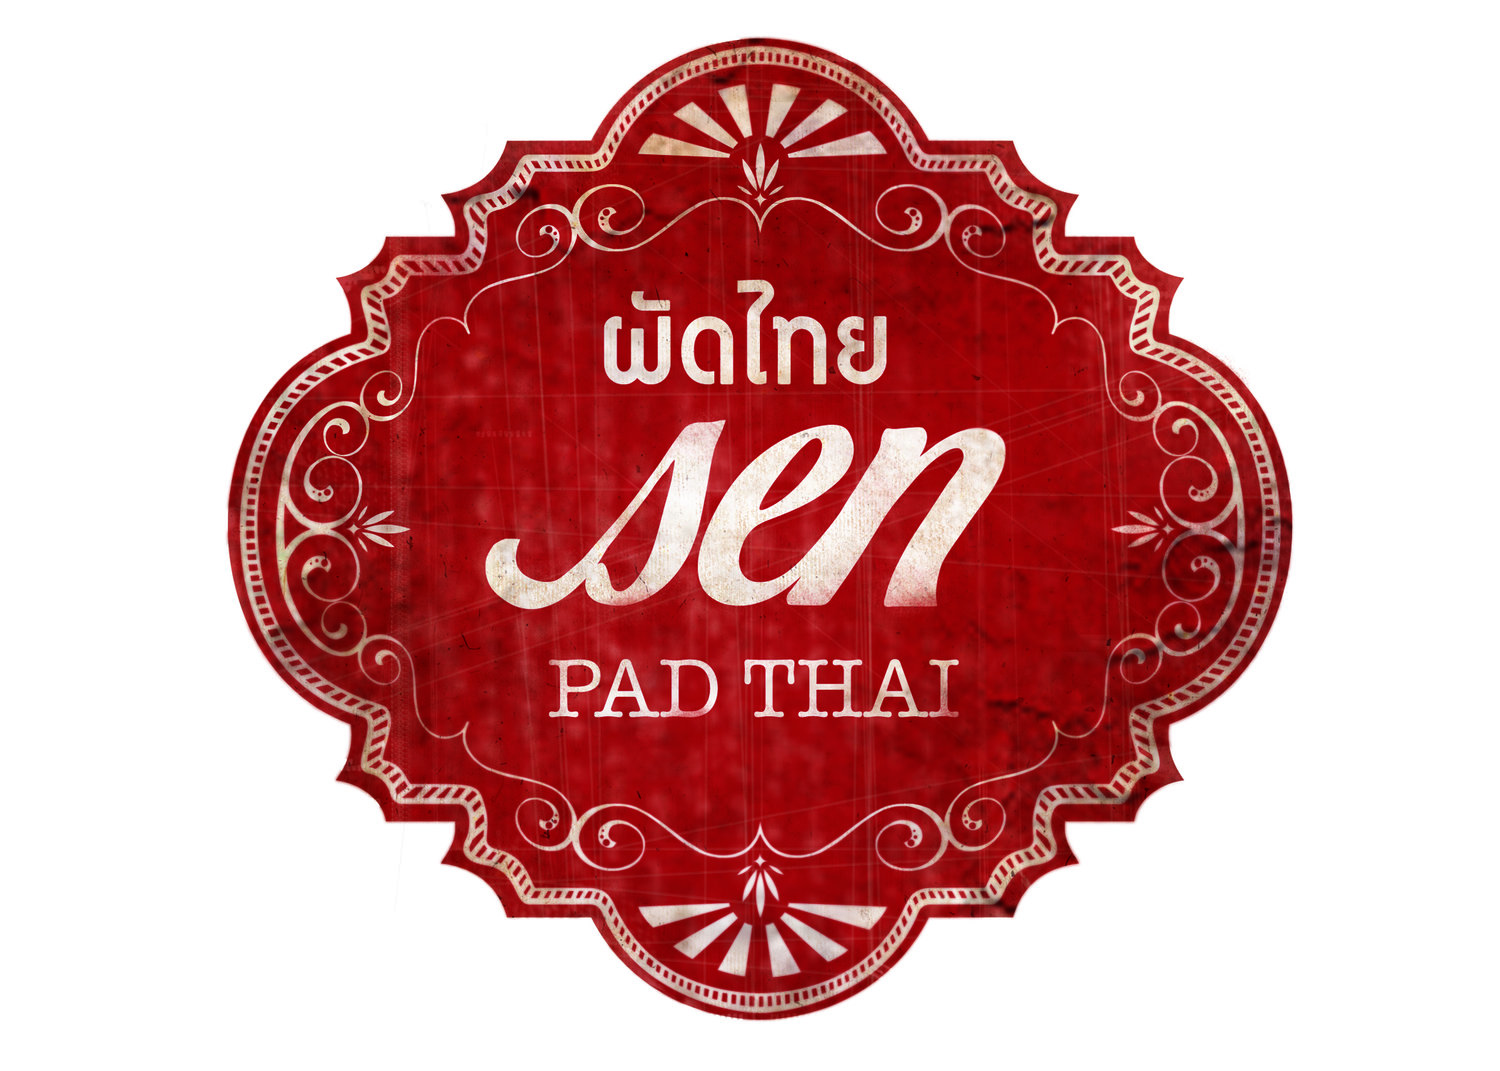 Sen Pad Thai